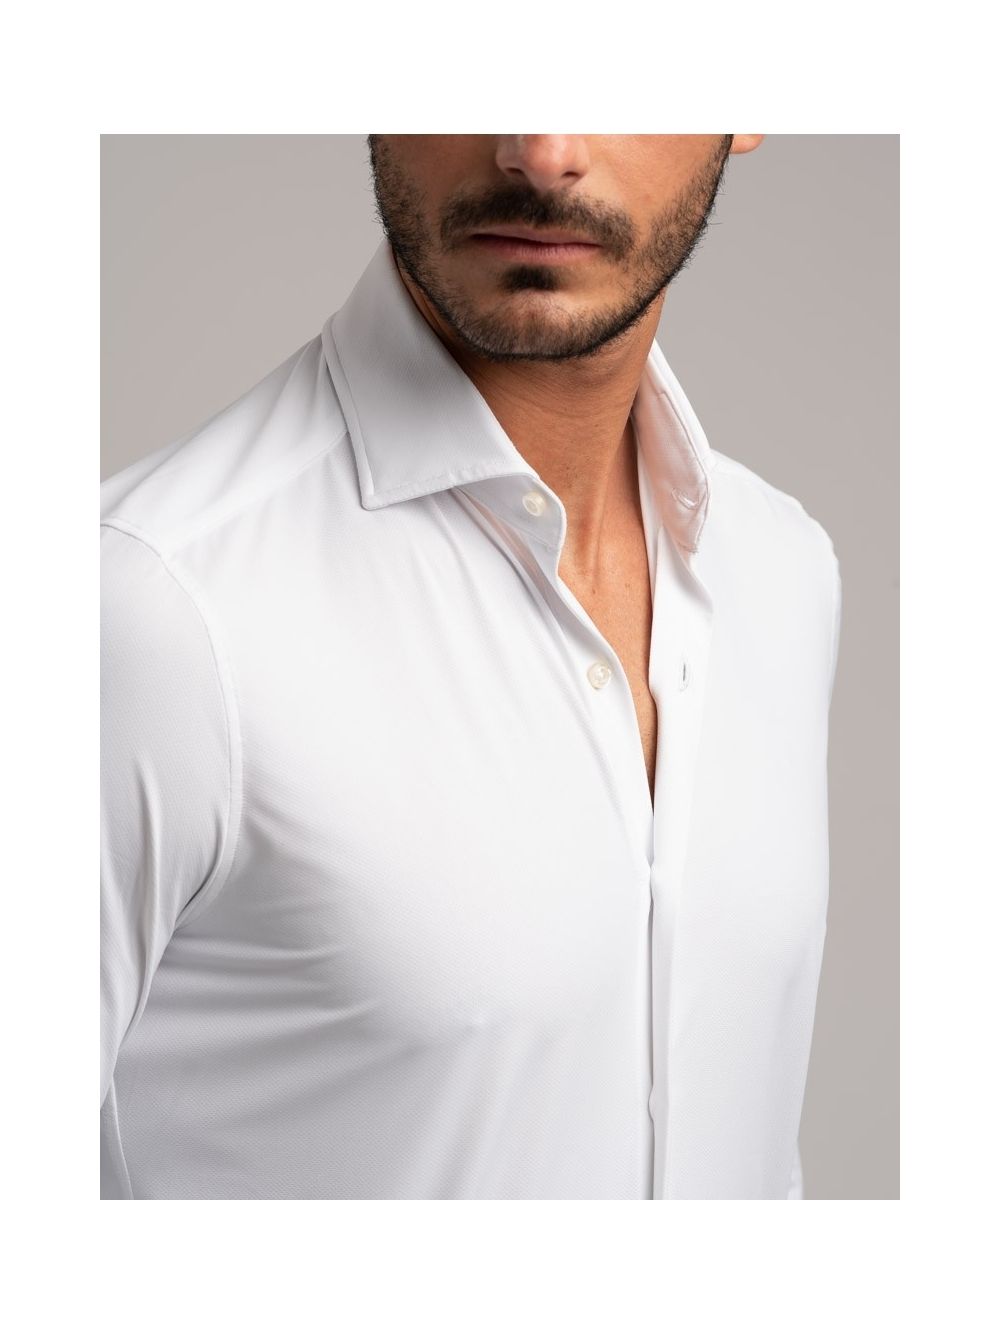 MODA DONNA Camicie & T-shirt Traforato sconto 58% Primark T-shirt Bianco 40 EU: 36 